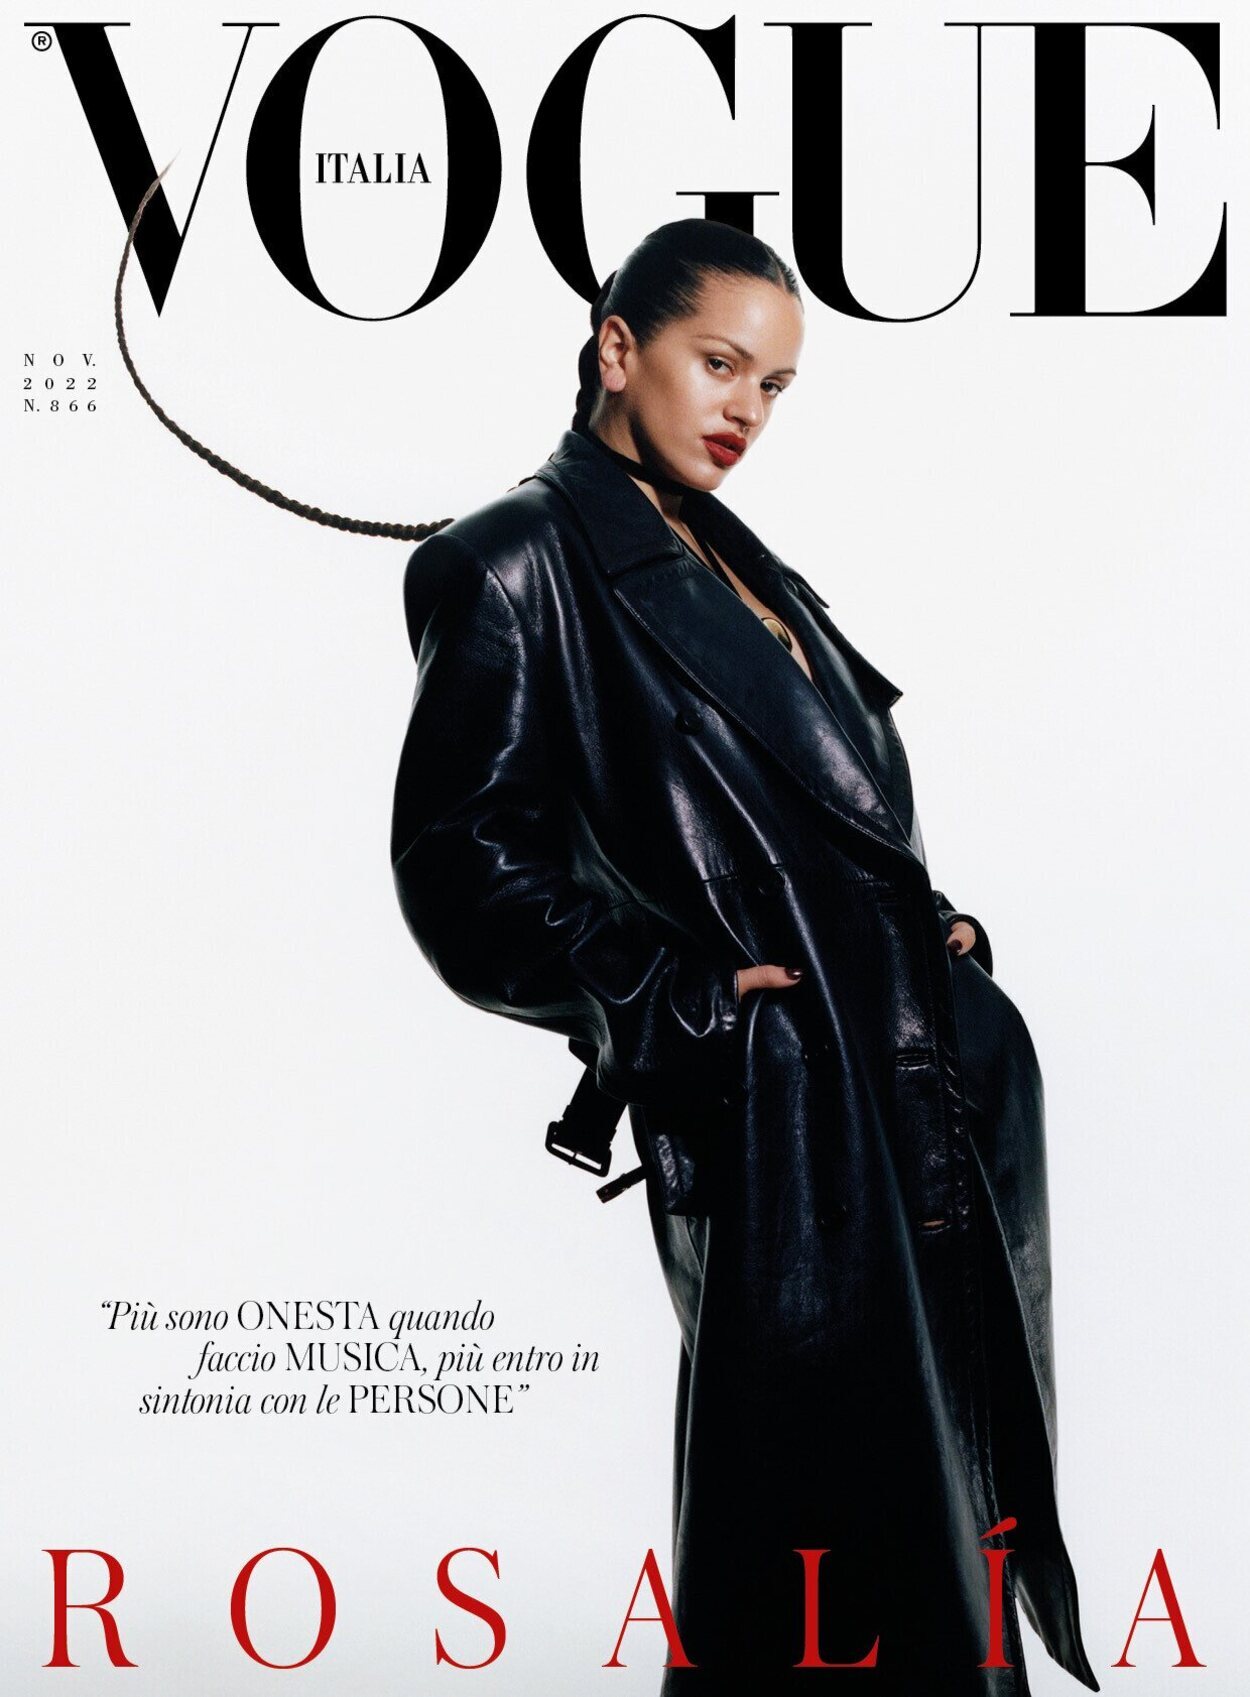 Rosalía hace historia con una portada doble en Vogue España e Italia